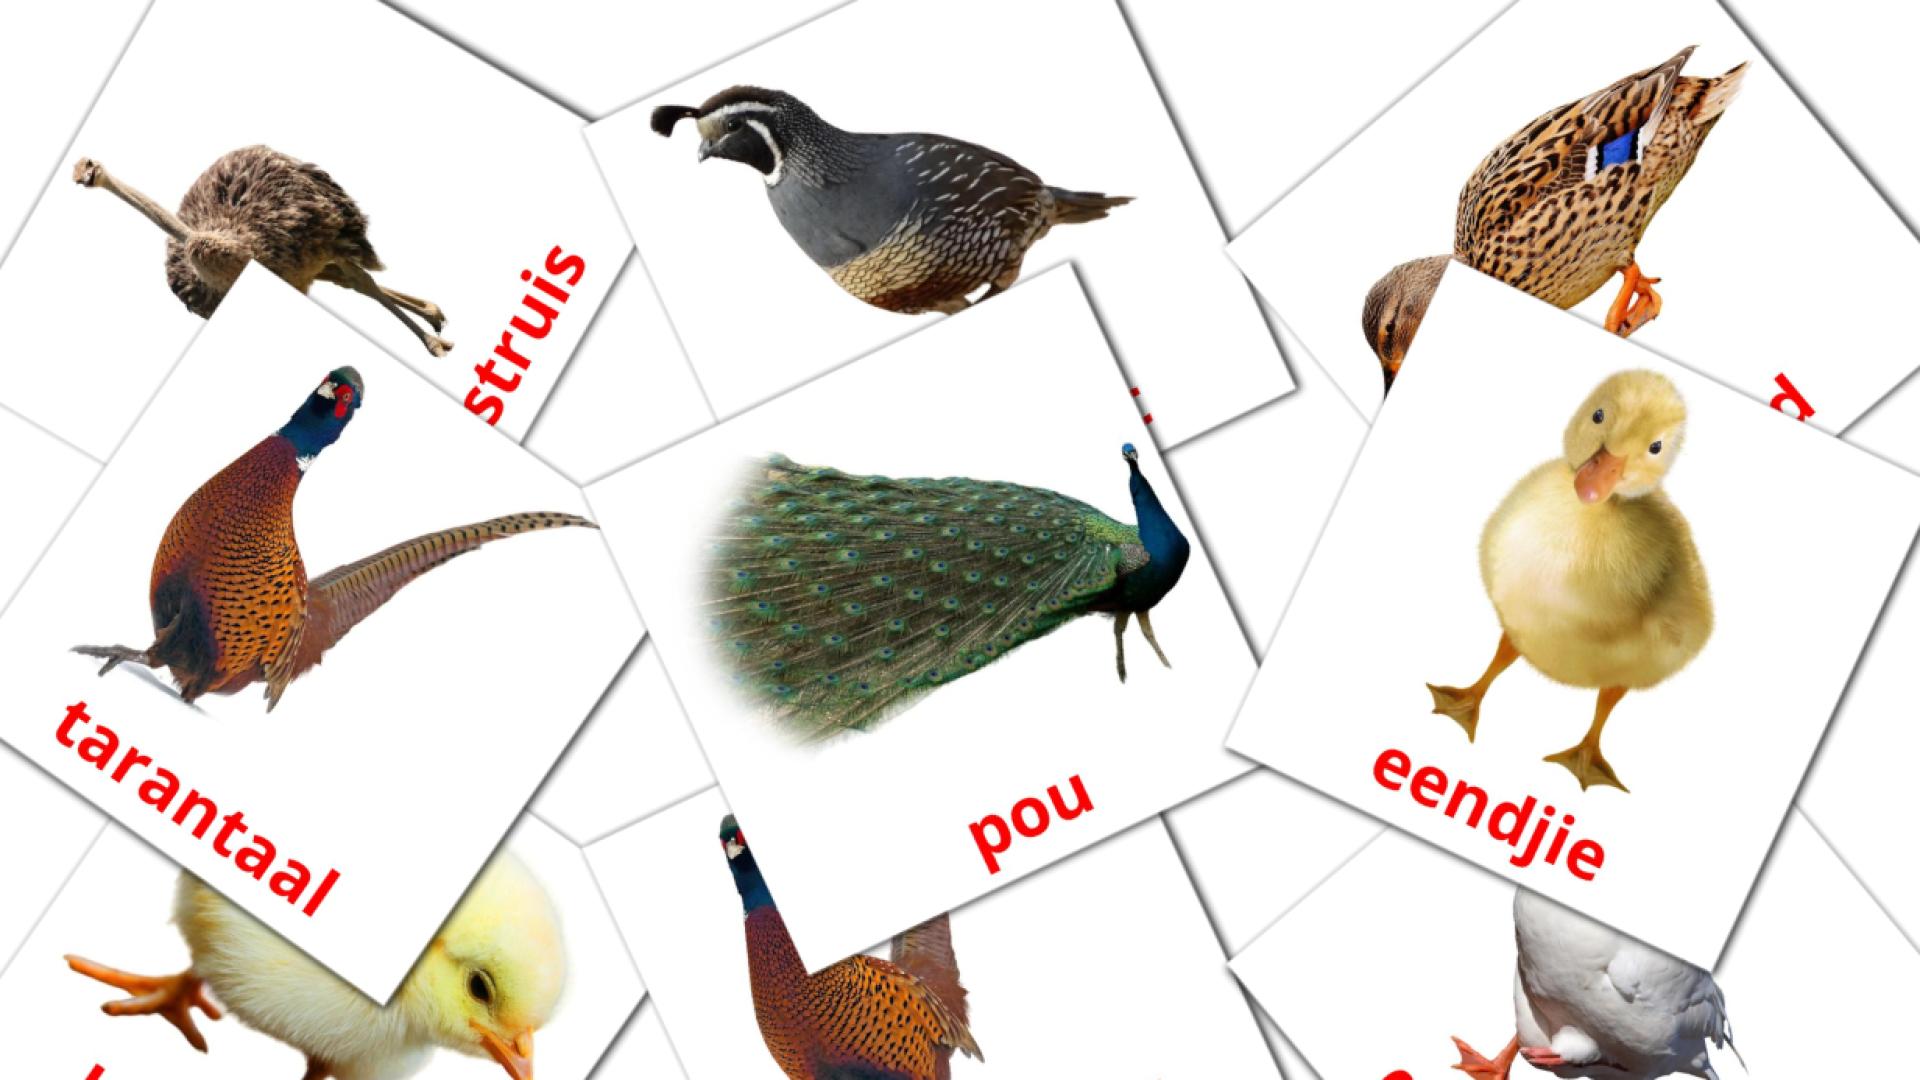 Farm birds - afrikaans vocabulary cards